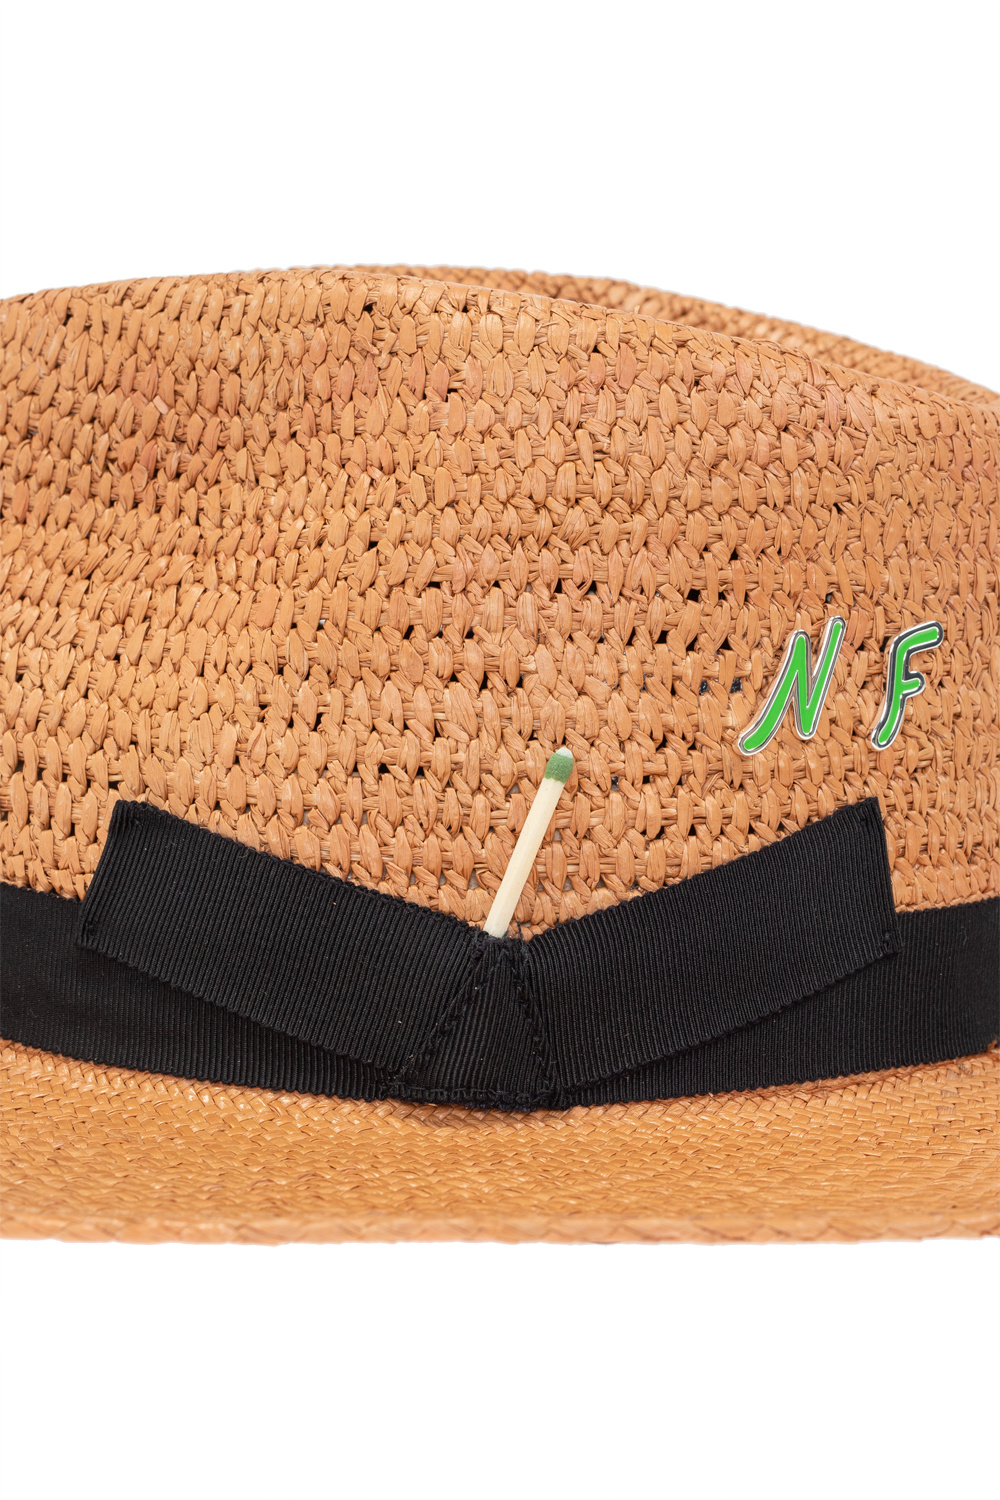 MISBHV Jordan Barrett Edition Bucket Hat